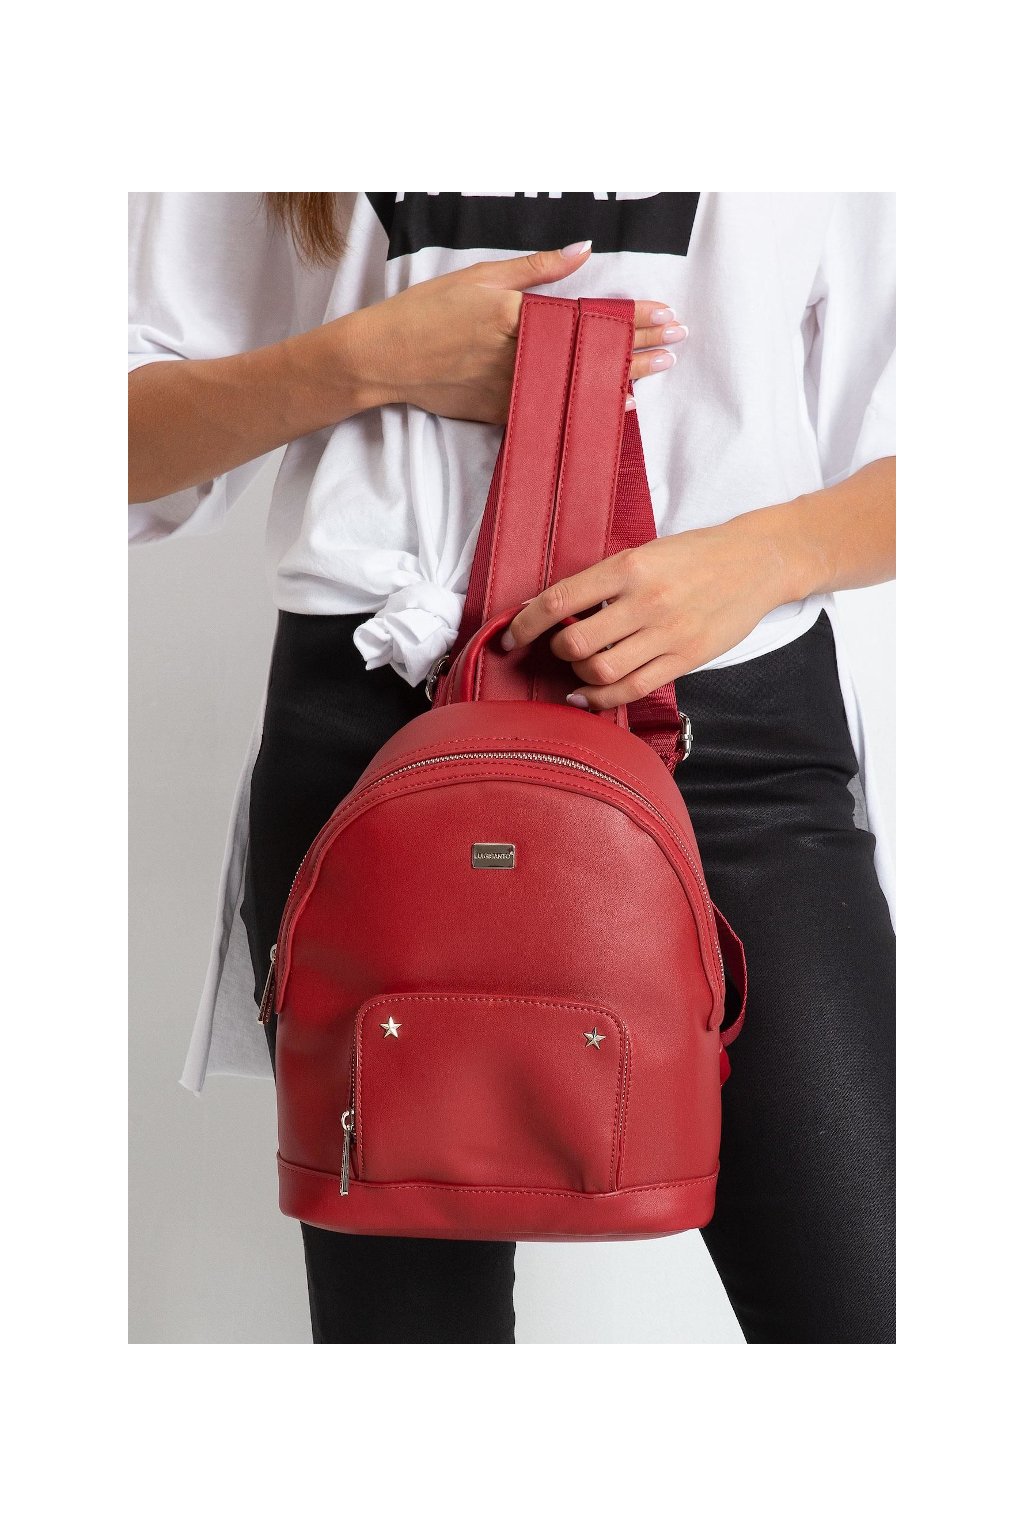 Menší červený batoh Luigisanto